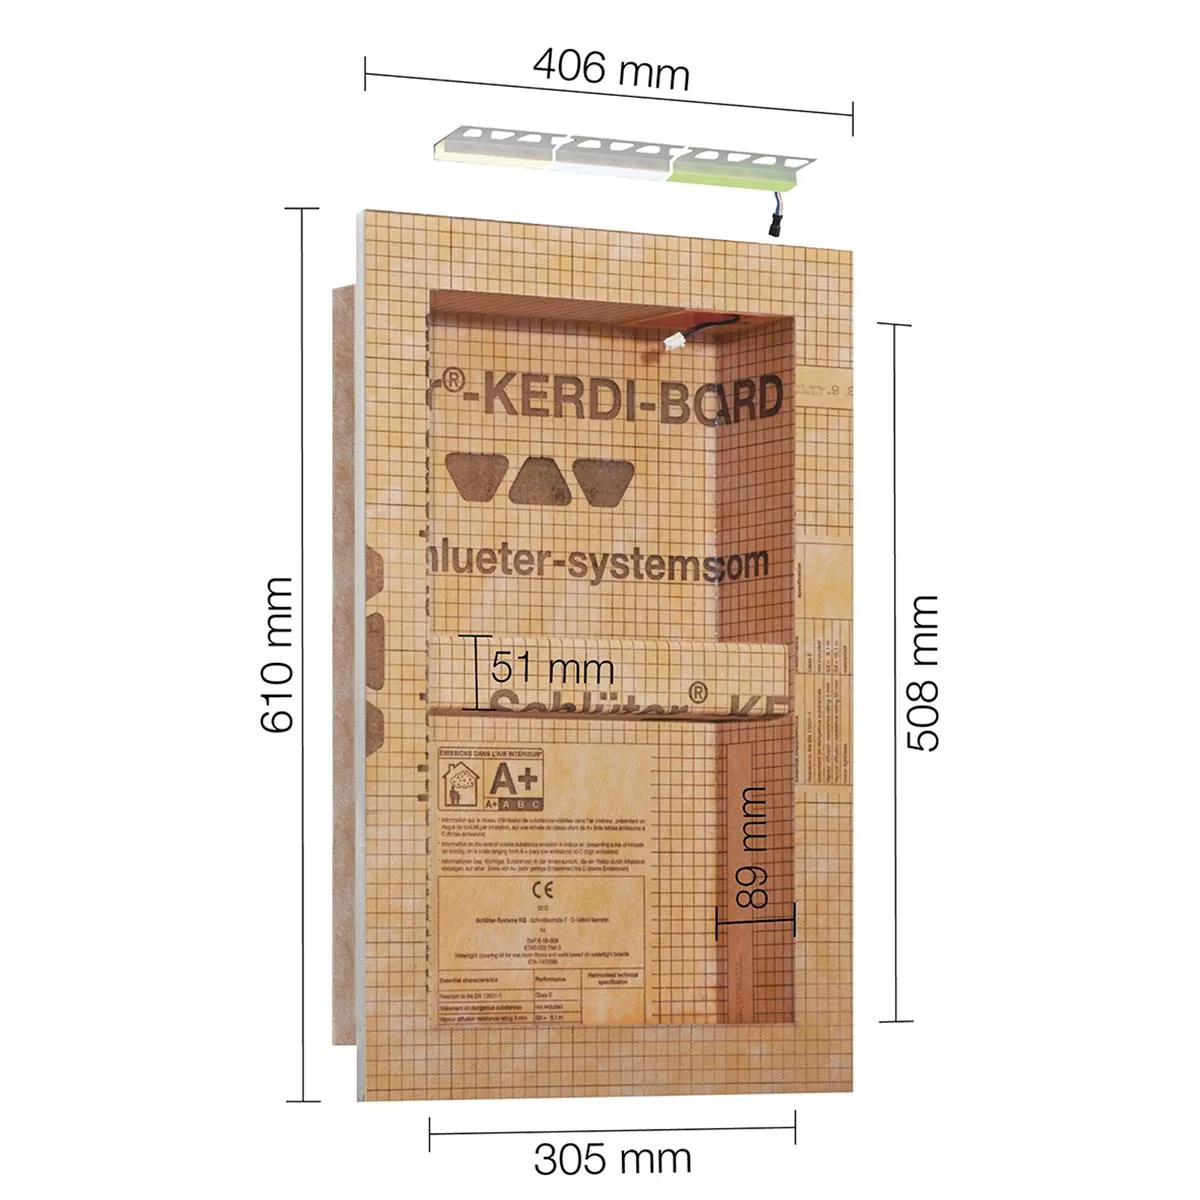 Schlüter Kerdi Board NLT Nischen Set LED-Beleuchtung Neutralweiß 30,5x50,8x0,89 cm